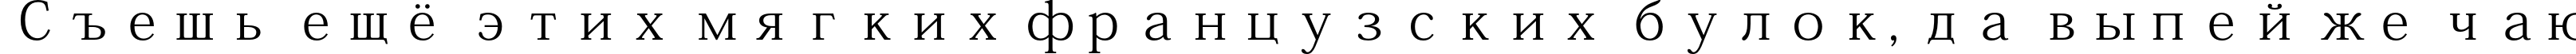 Пример написания шрифтом Adobe Kaiti Std R текста на русском